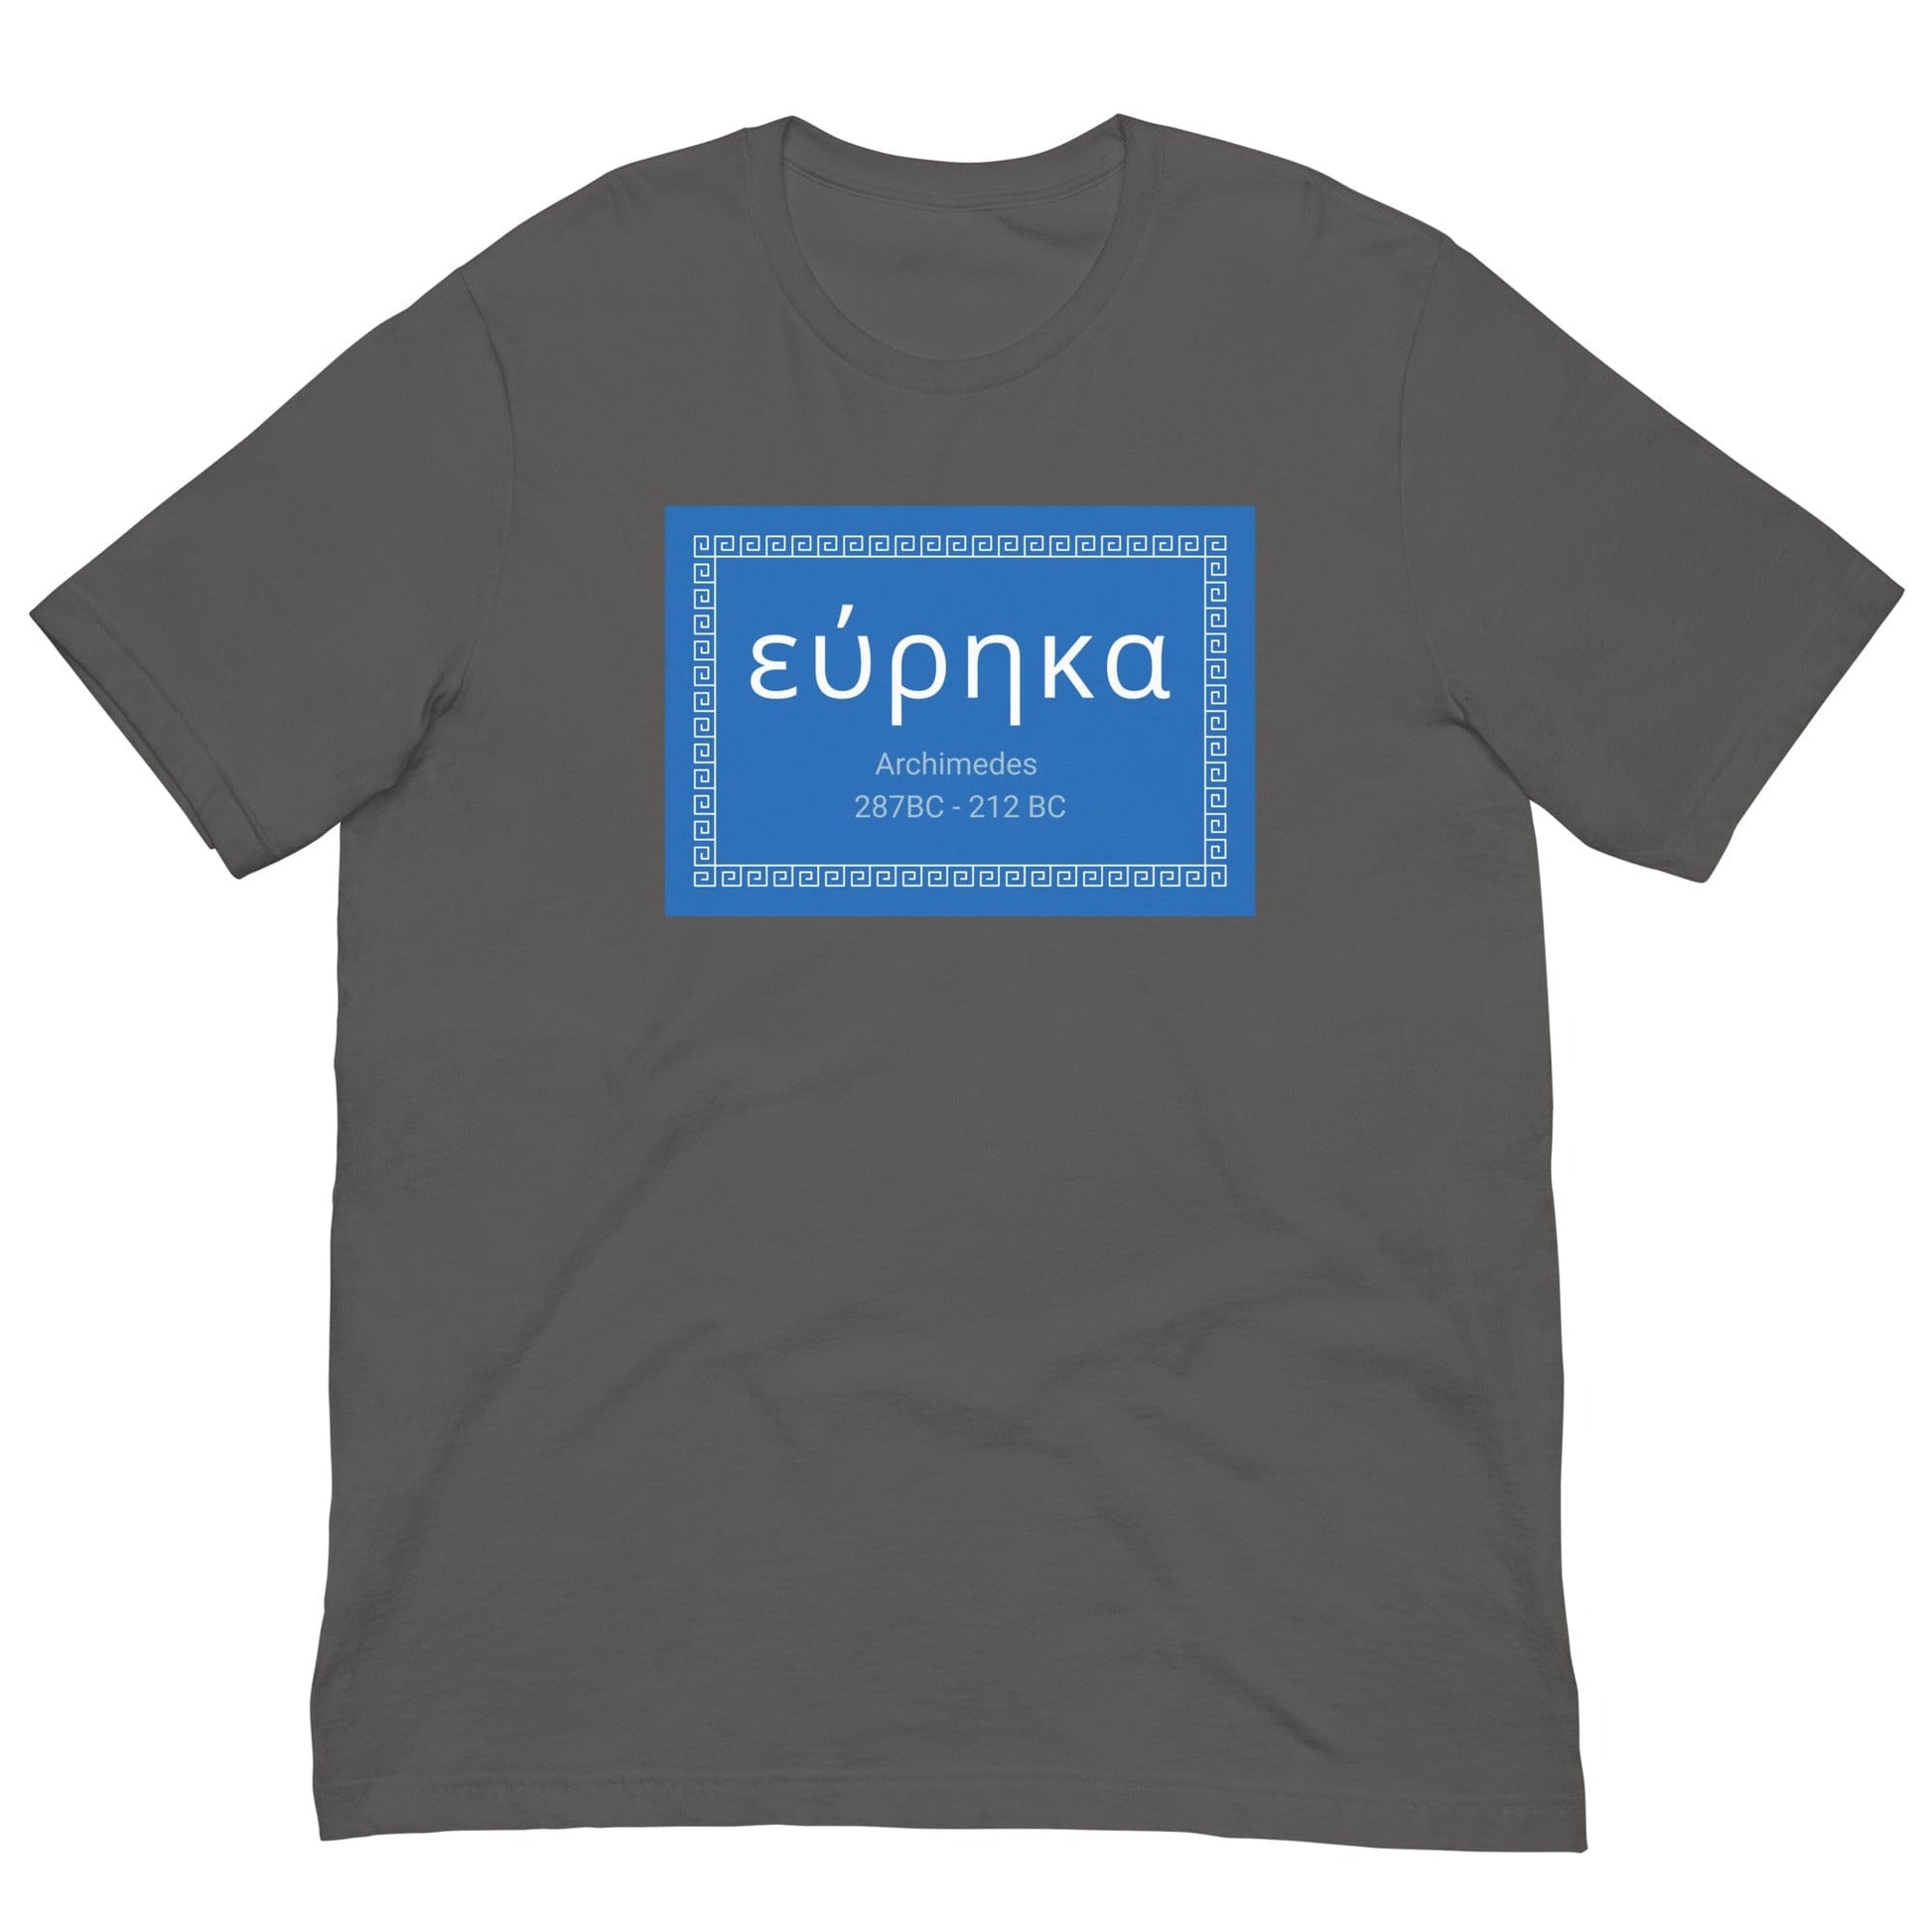 Eureka - Archimedes quote T-shirt Asphalt / S